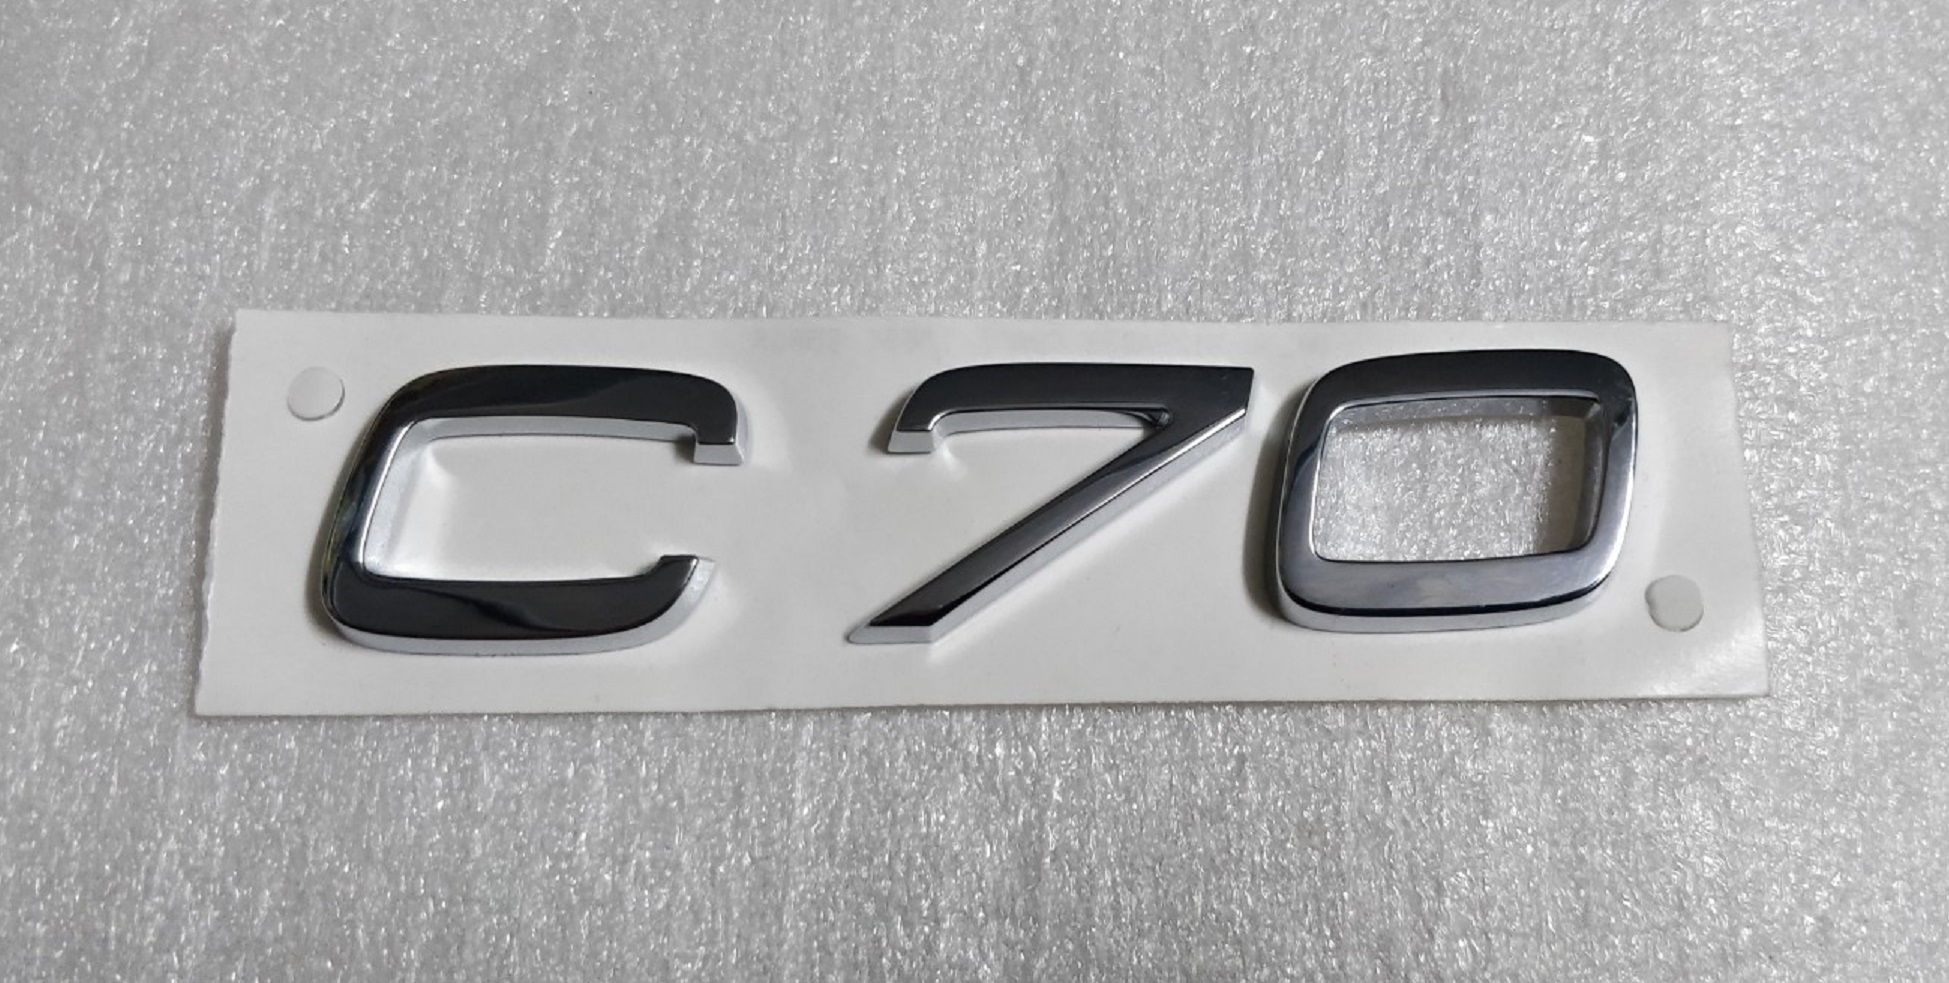 Volvo C70 BADGE Rear Emblem 2010 2013 31294073